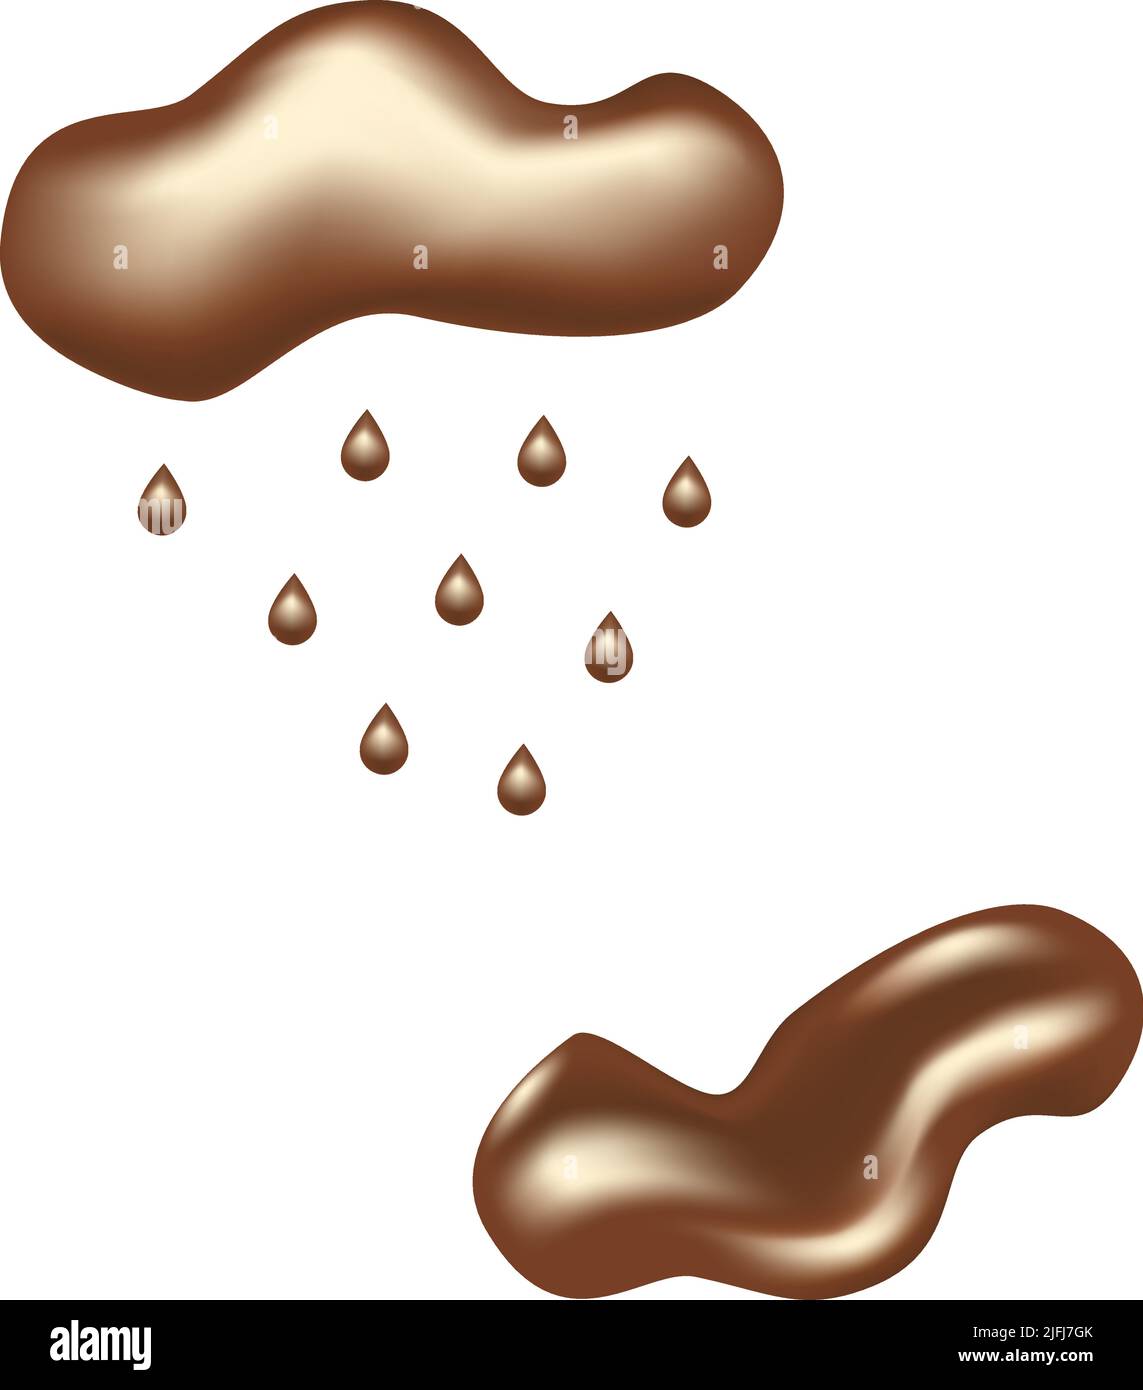 Un ensemble d'éléments graphiques abstraits et réalistes dans des teintes de chocolat tendance, tels que des nuages, des gouttes, des vagues, bas de porte. Illustration de Vector 3D. Autocollant. Style de vie Illustration de Vecteur